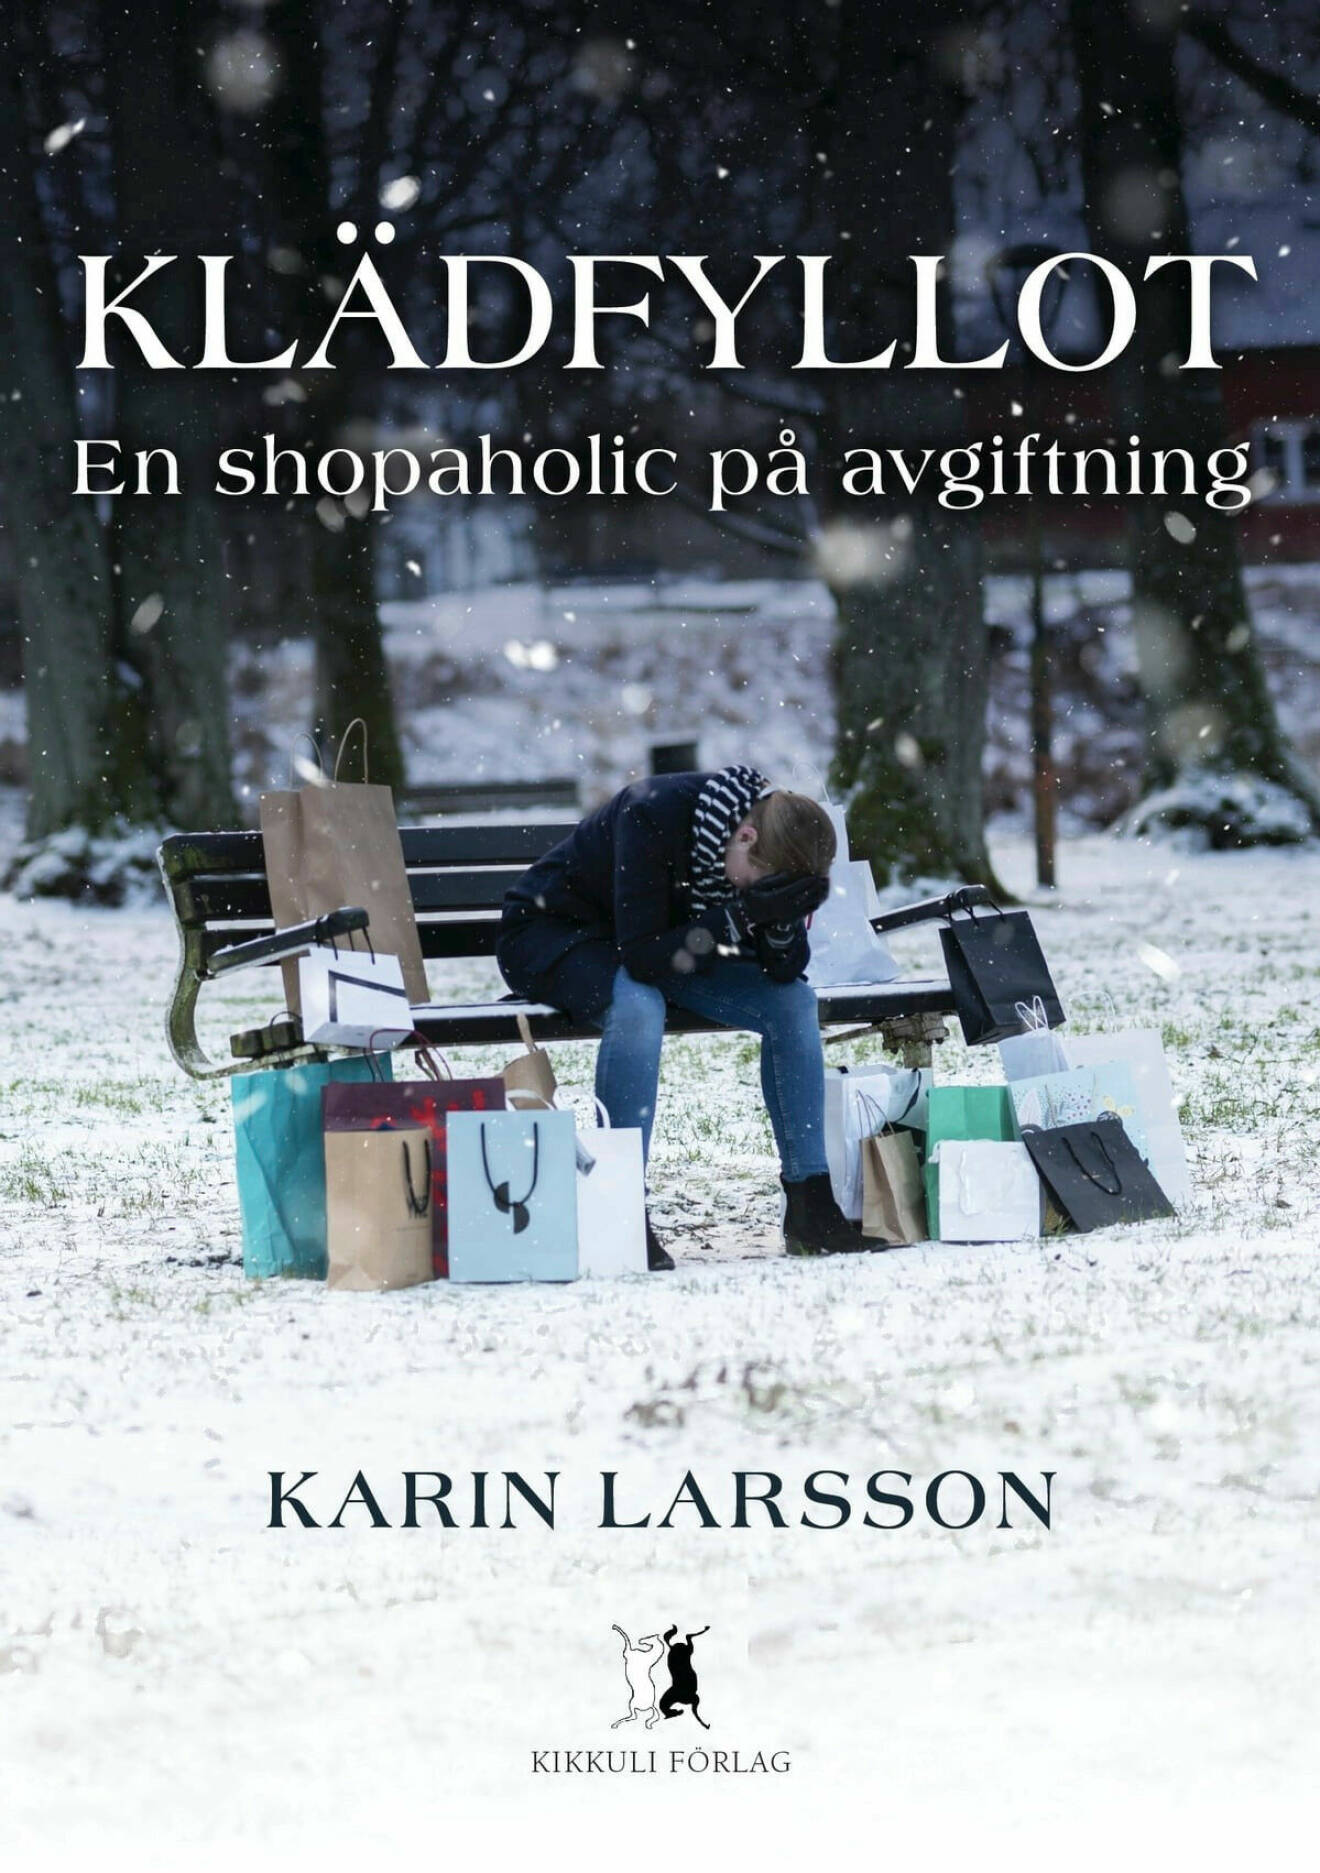 Karin Larsson Klädfyllot bokomslag